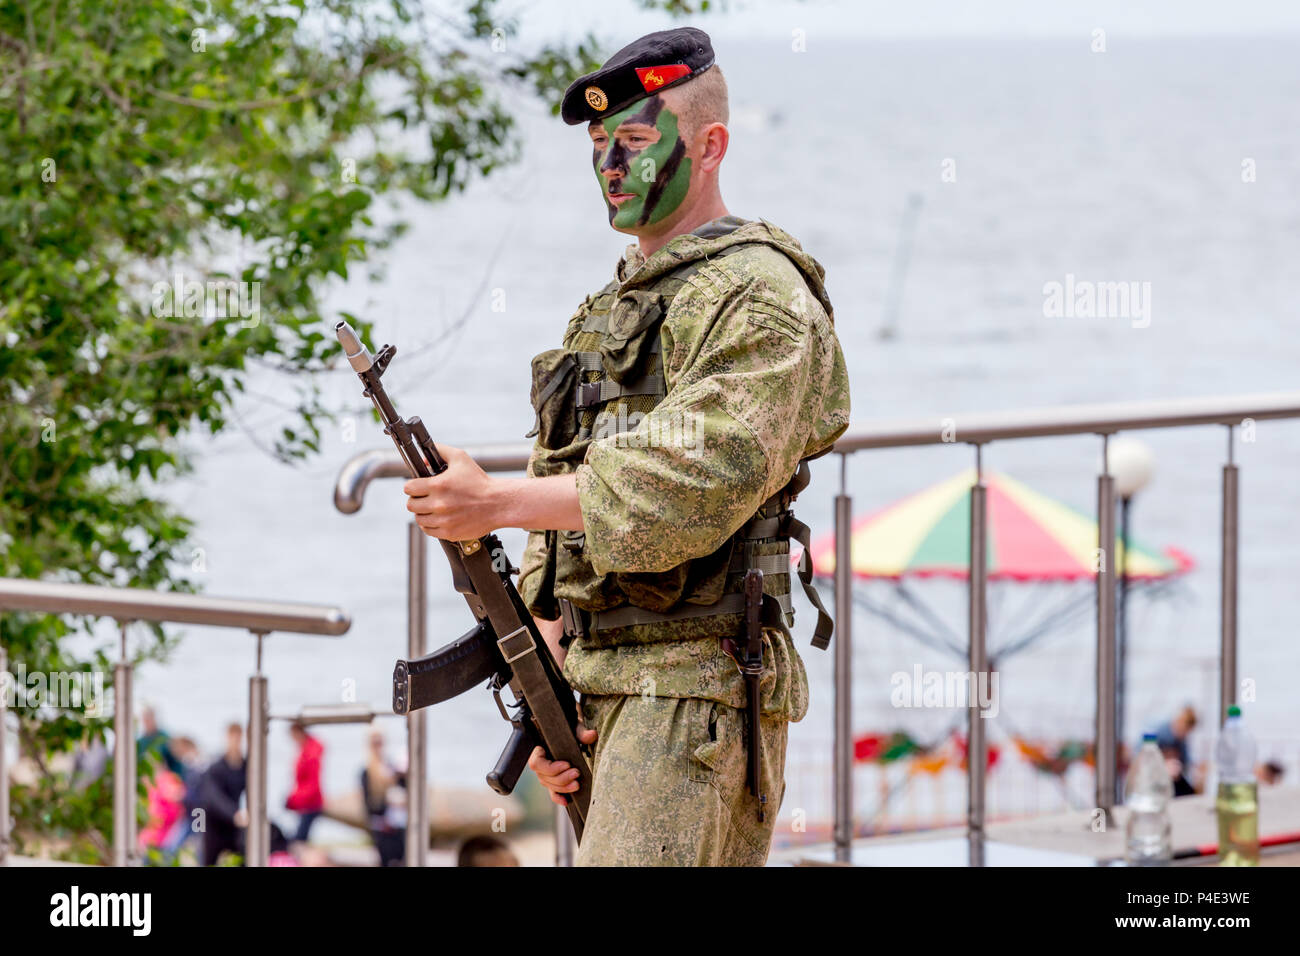 La Russie, Vladivostok, 05/09/2018. Portrait d'un soldat armé de forces spéciales de l'armée russe. Il joue sur la scène en l'honneur de la Russie 24. Celebra annuel Banque D'Images